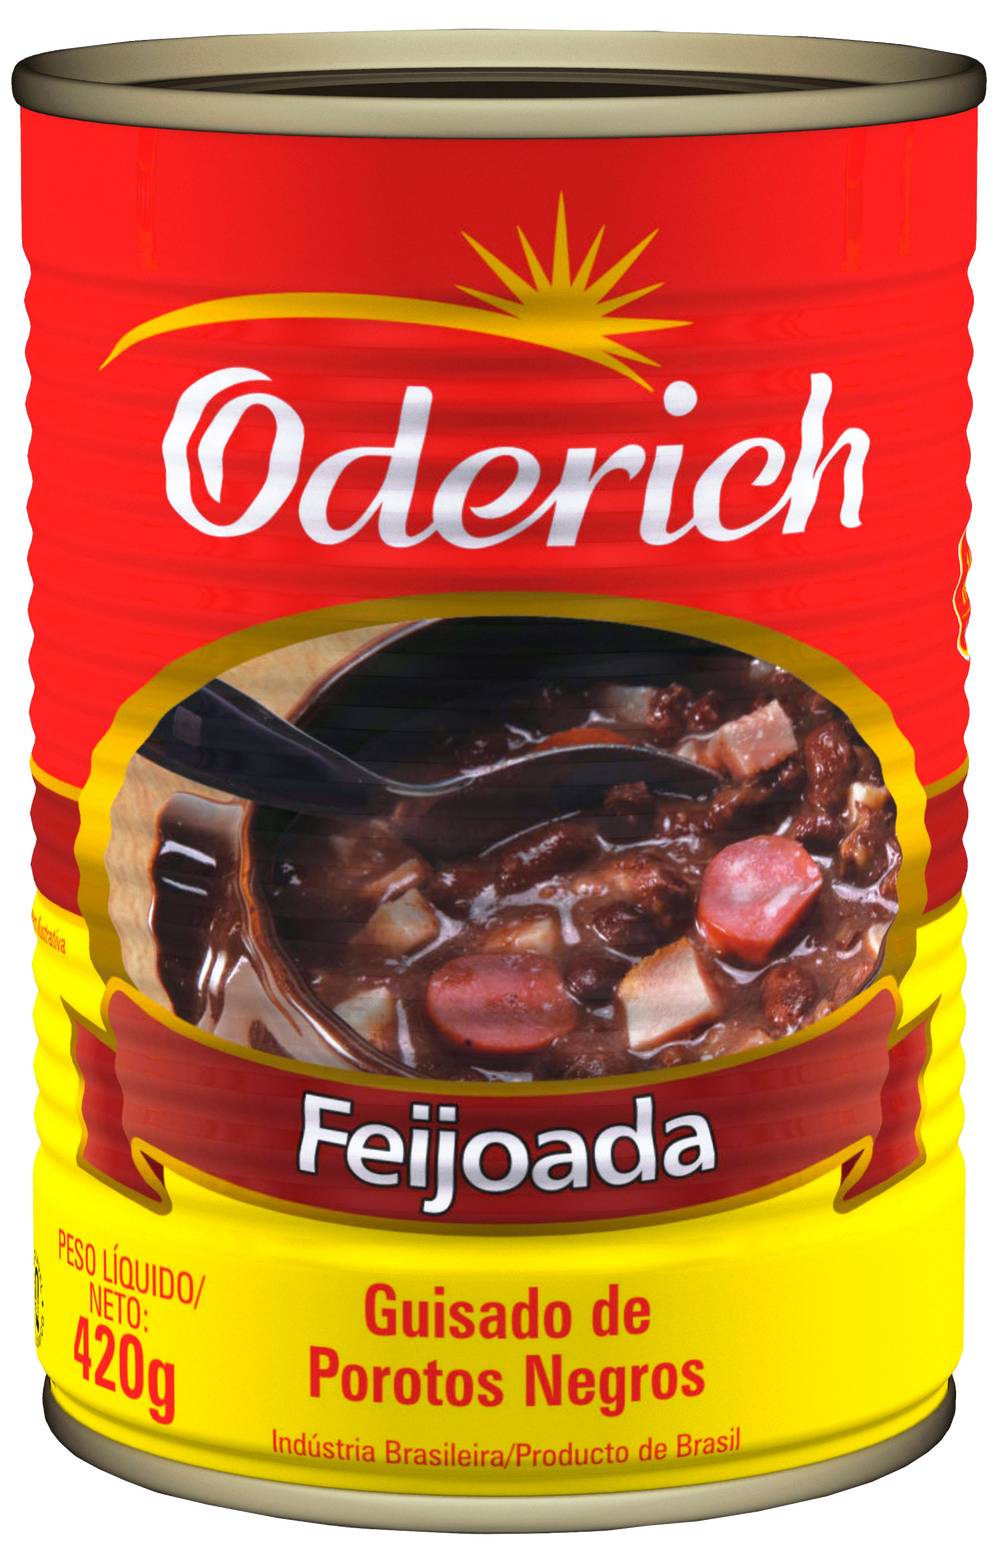 Oderich feijoada (420g)